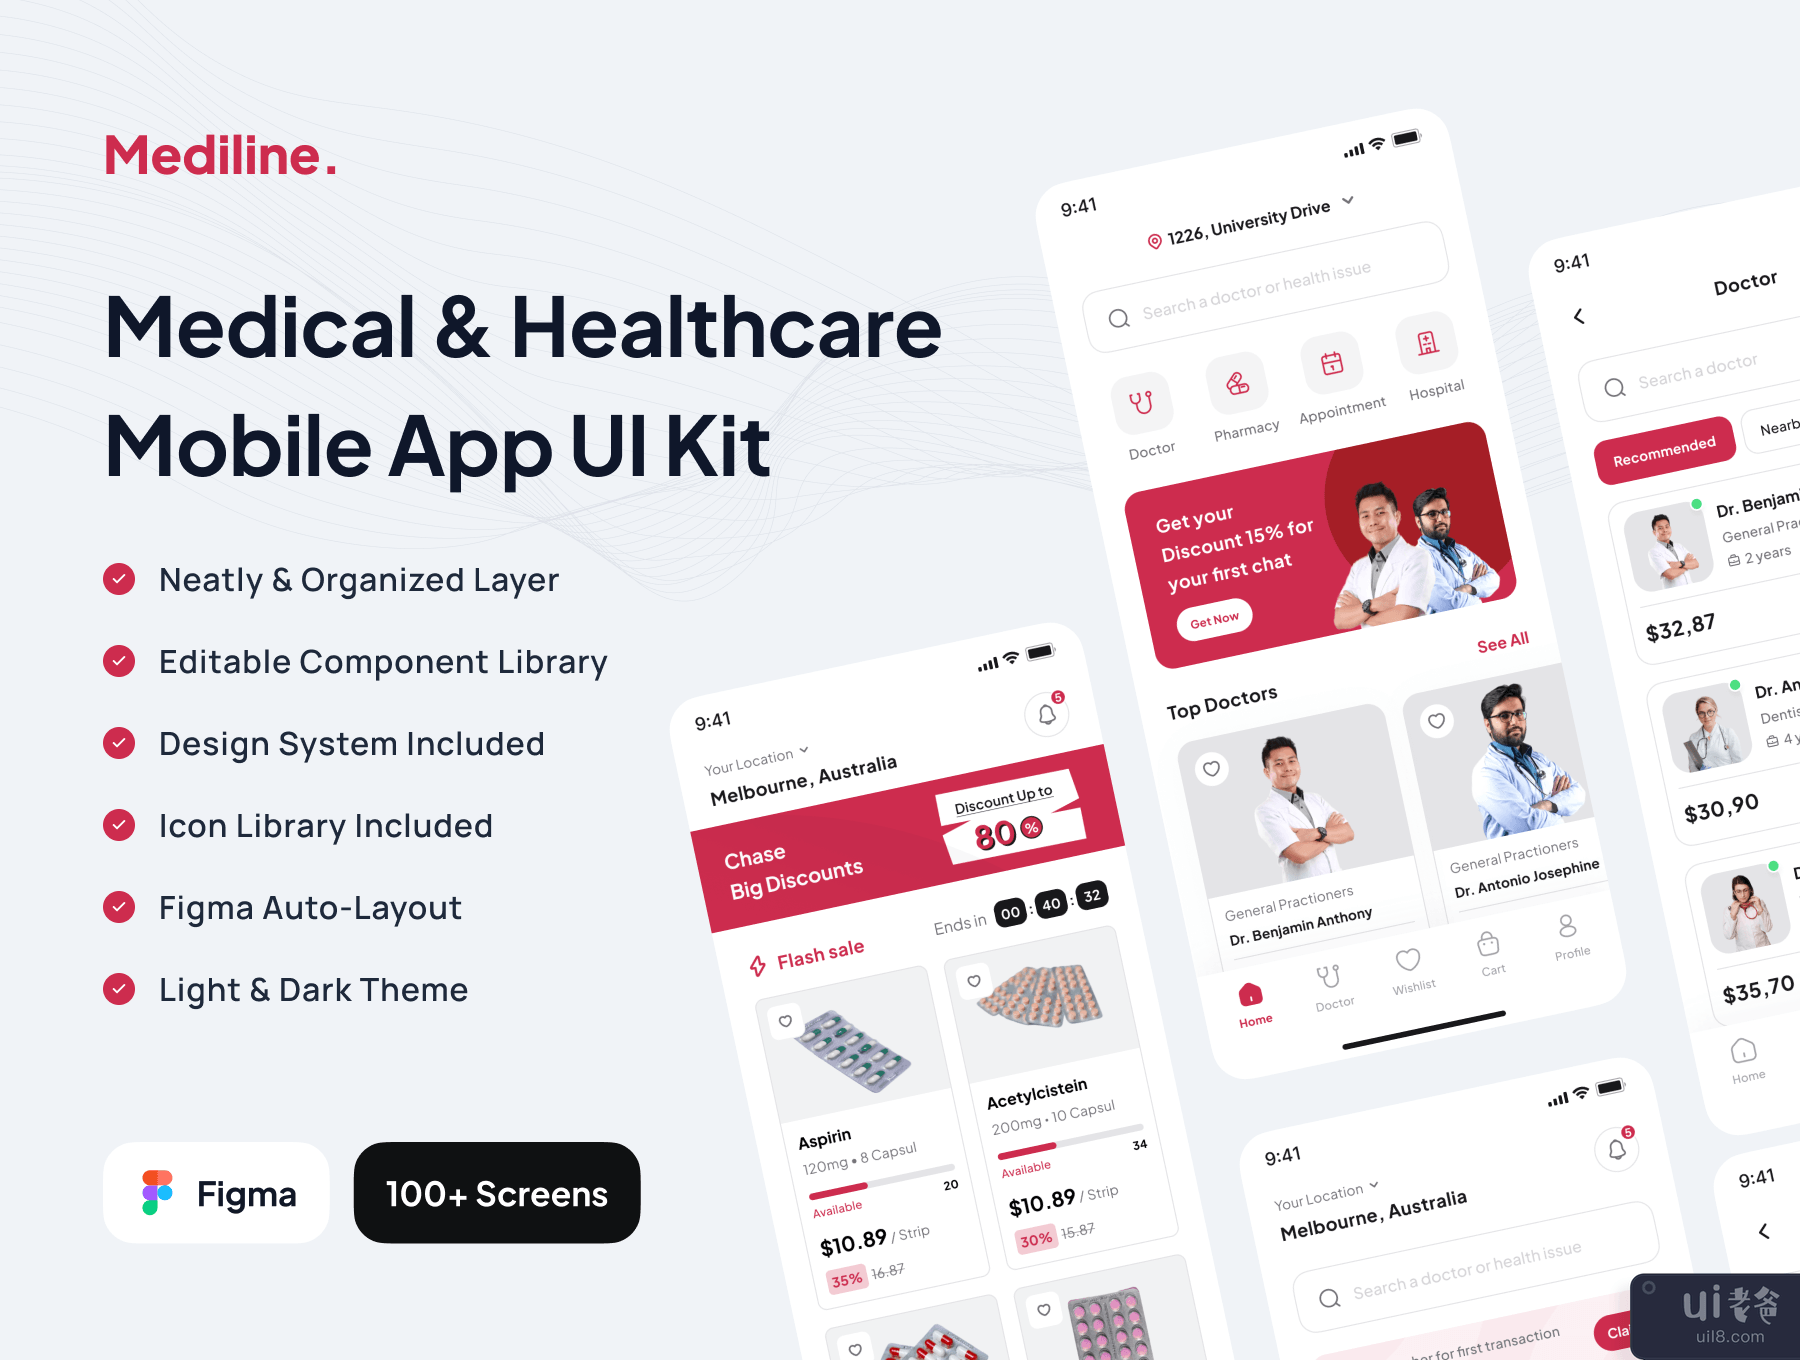 Mediline - 医疗保健应用程序 UI 工具包 (Mediline - Medical & Healthcare App UI Kit)插图5